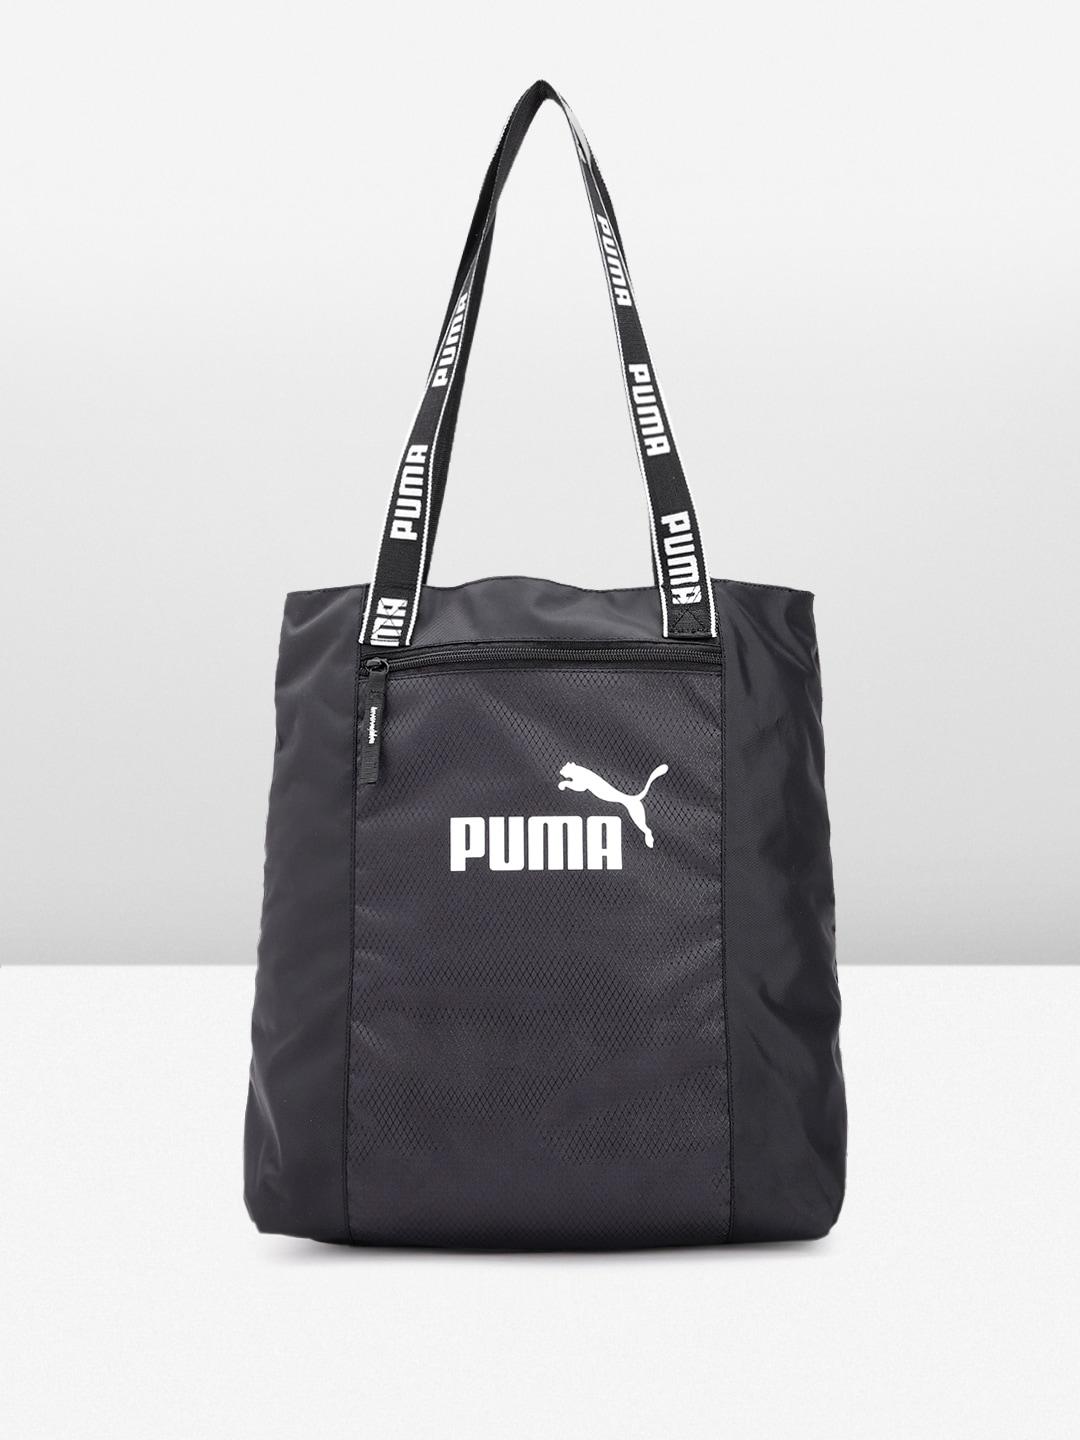 puma-brand-logo-printed-structured-shoulder-bag